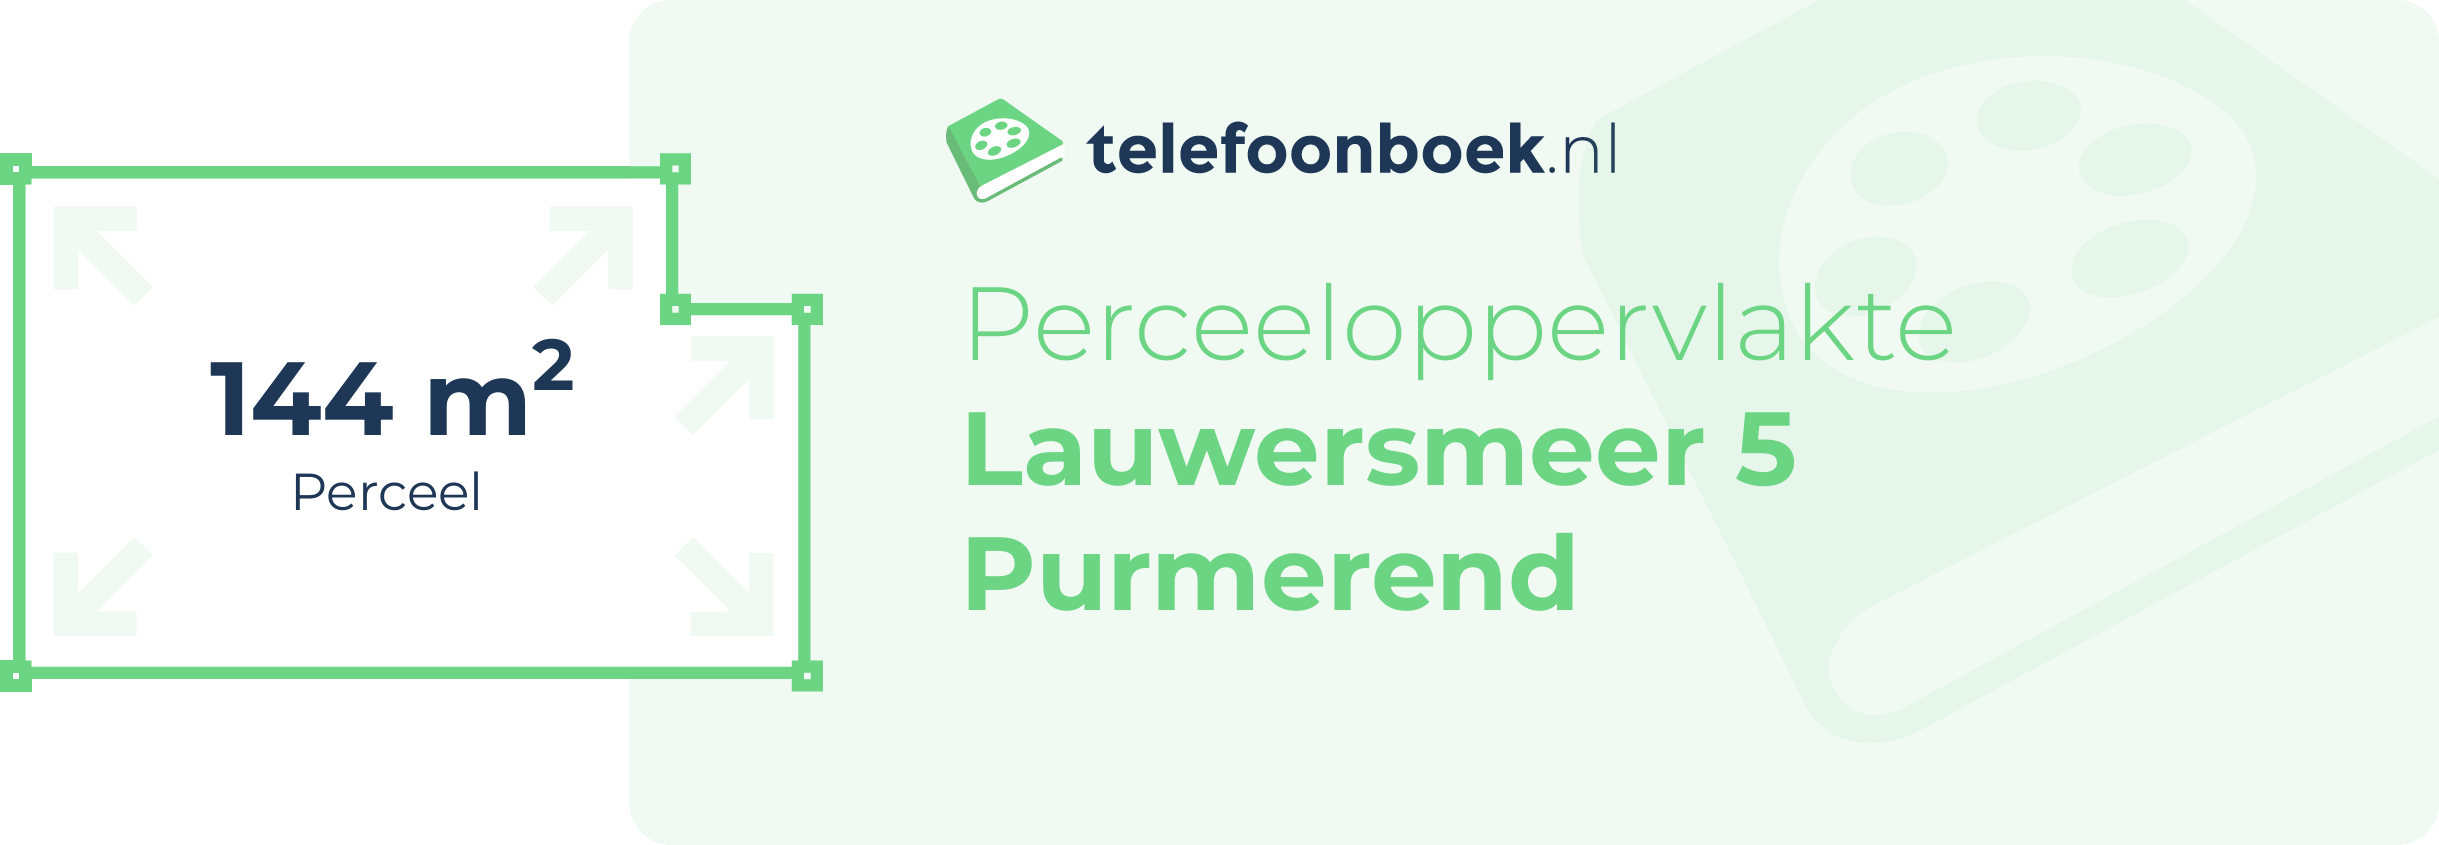 Perceeloppervlakte Lauwersmeer 5 Purmerend